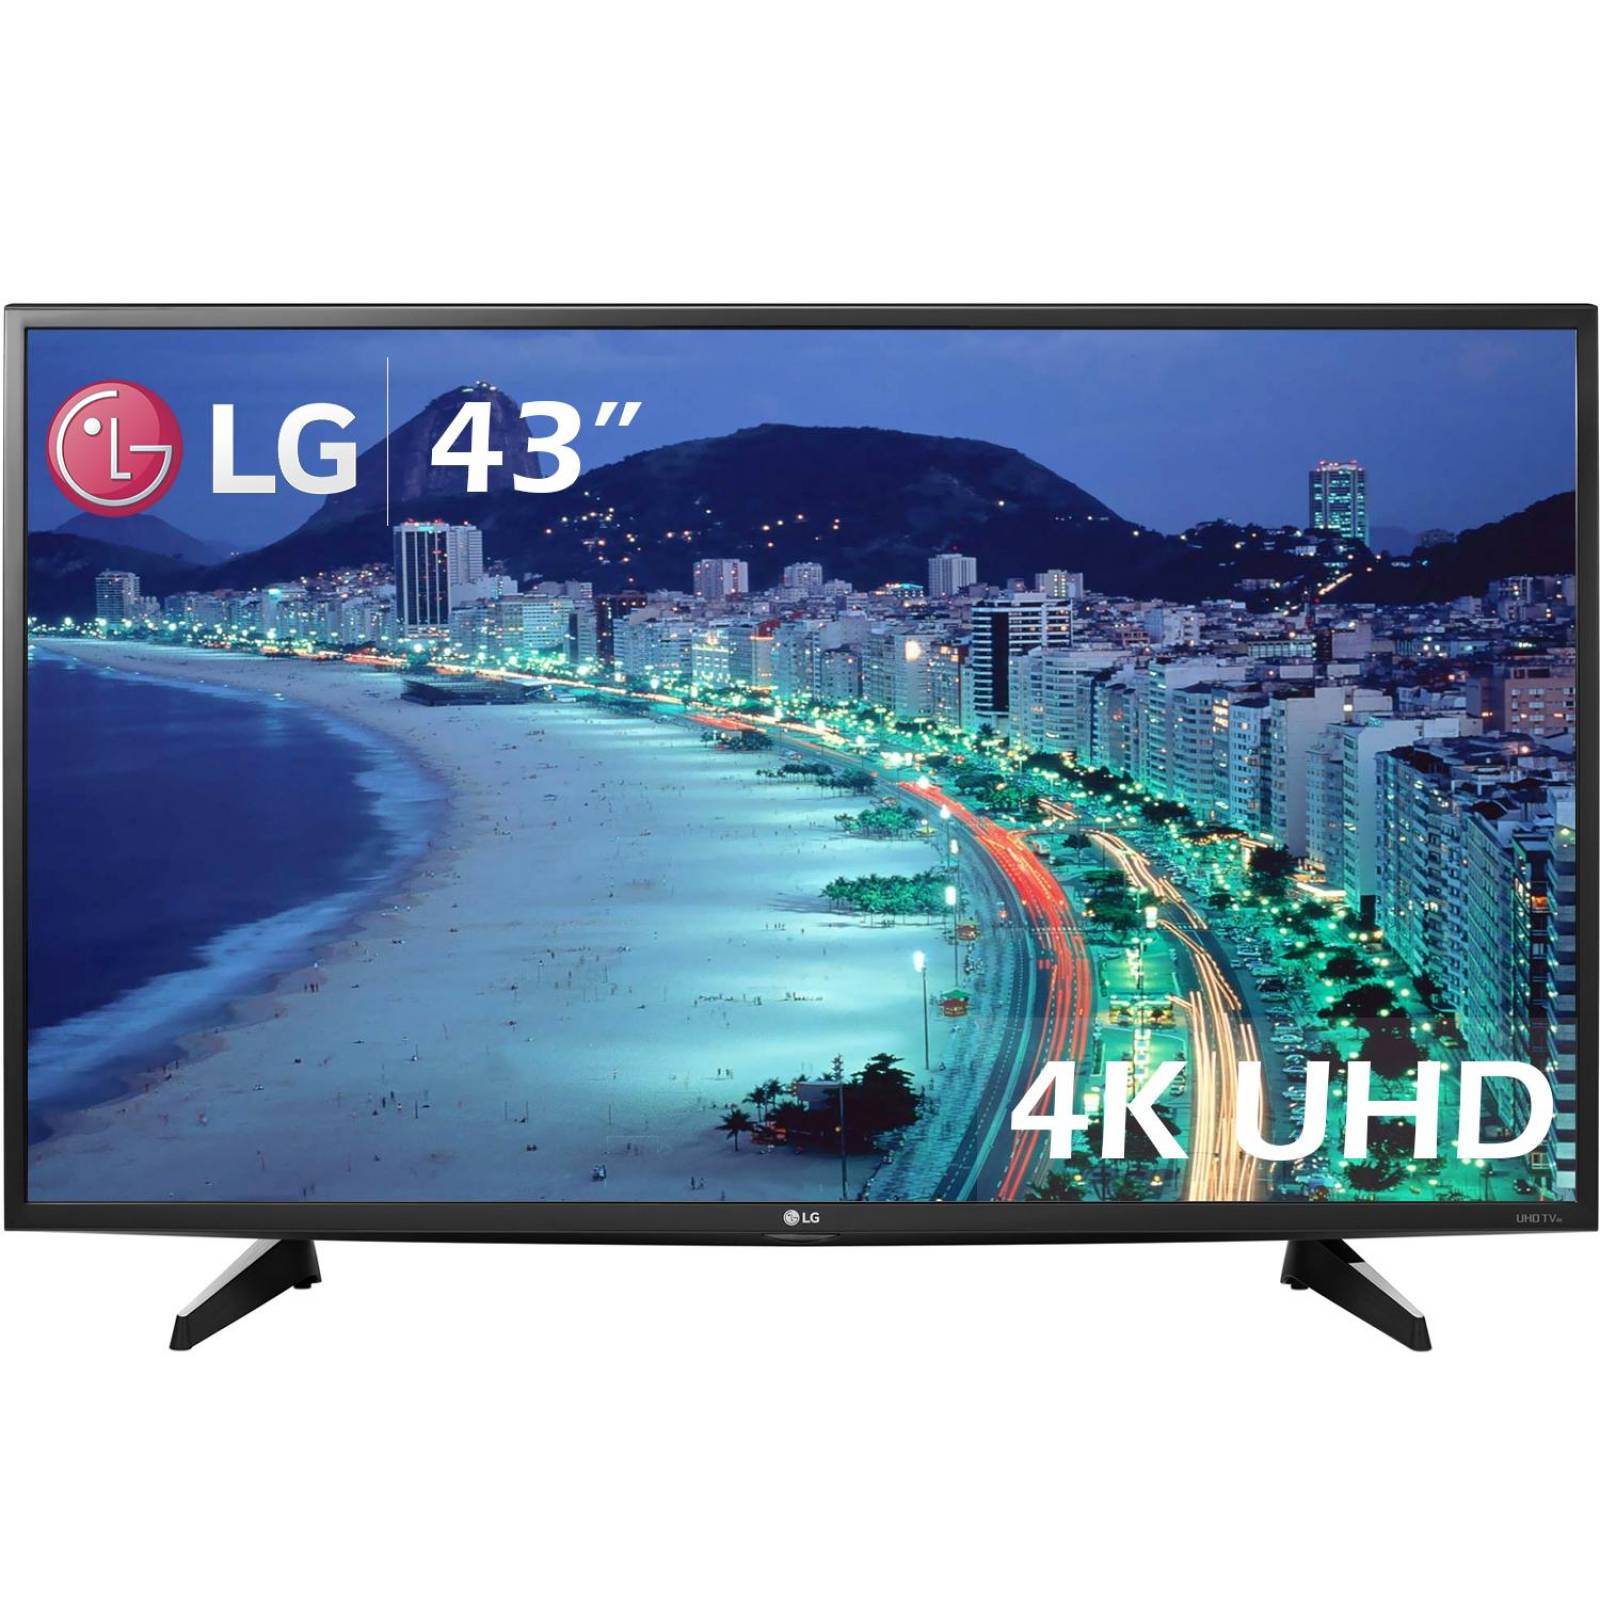 Pantalla 43 Pulgadas LG SmartTV IPS 4K LED HDMI USB 43UH6100 